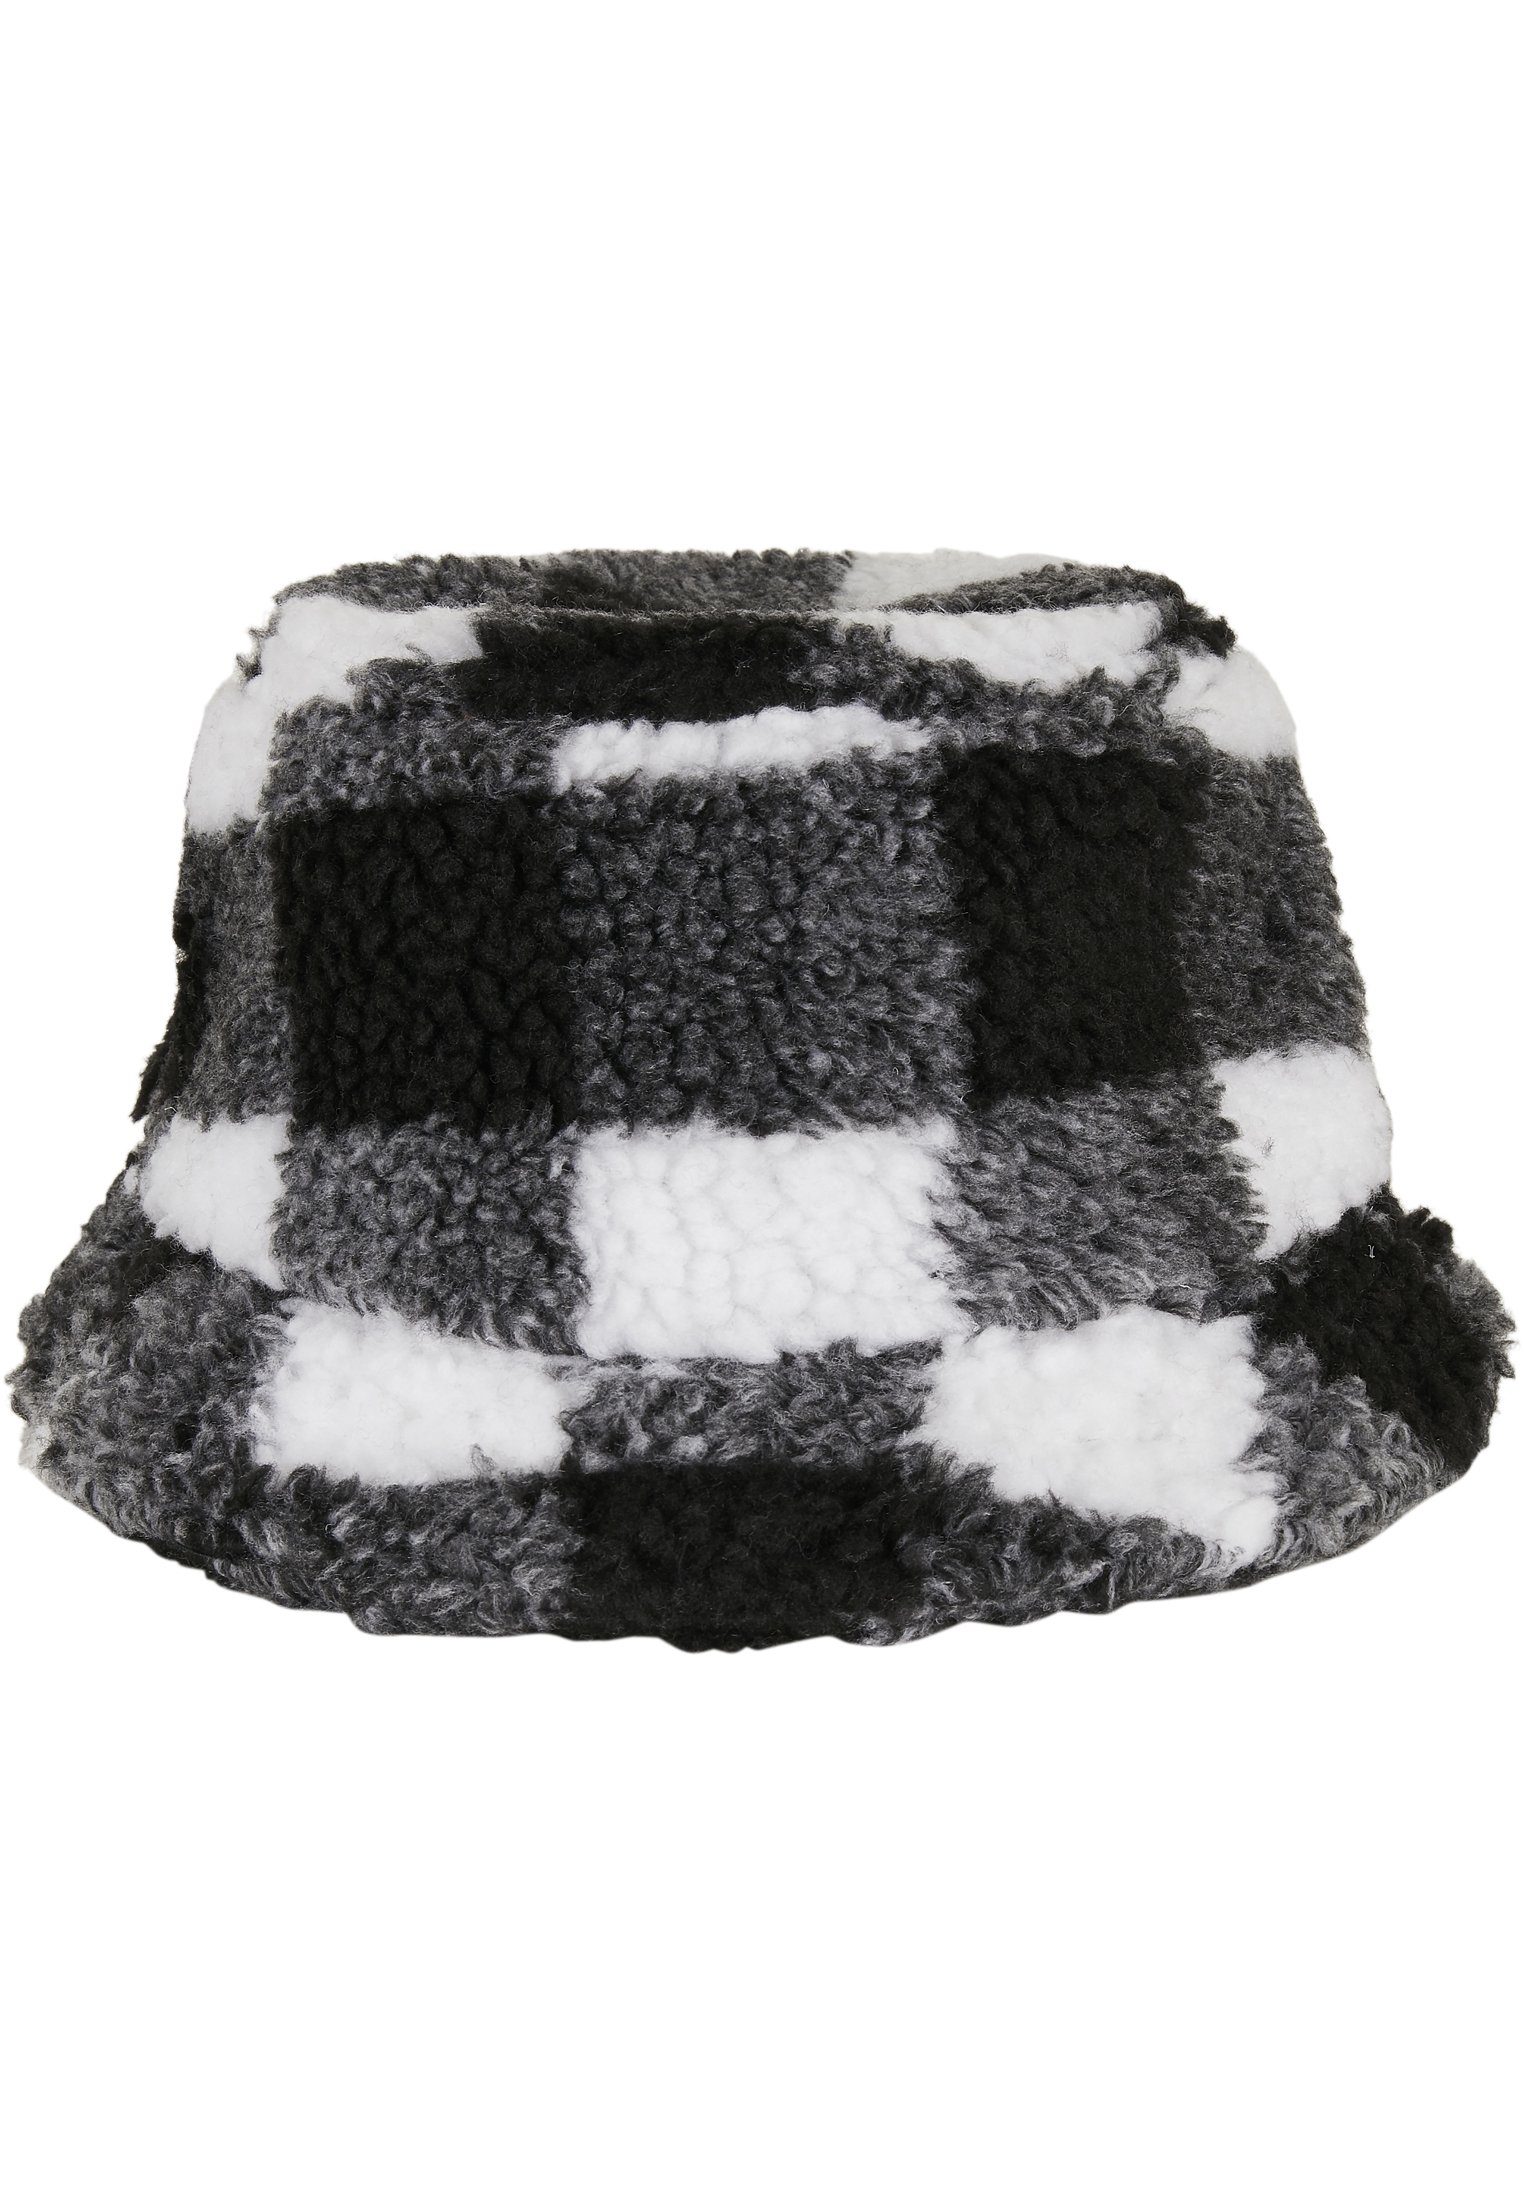 Bucket Flex Check Hat Hat Bucket Flexfit white/black Sherpa Cap